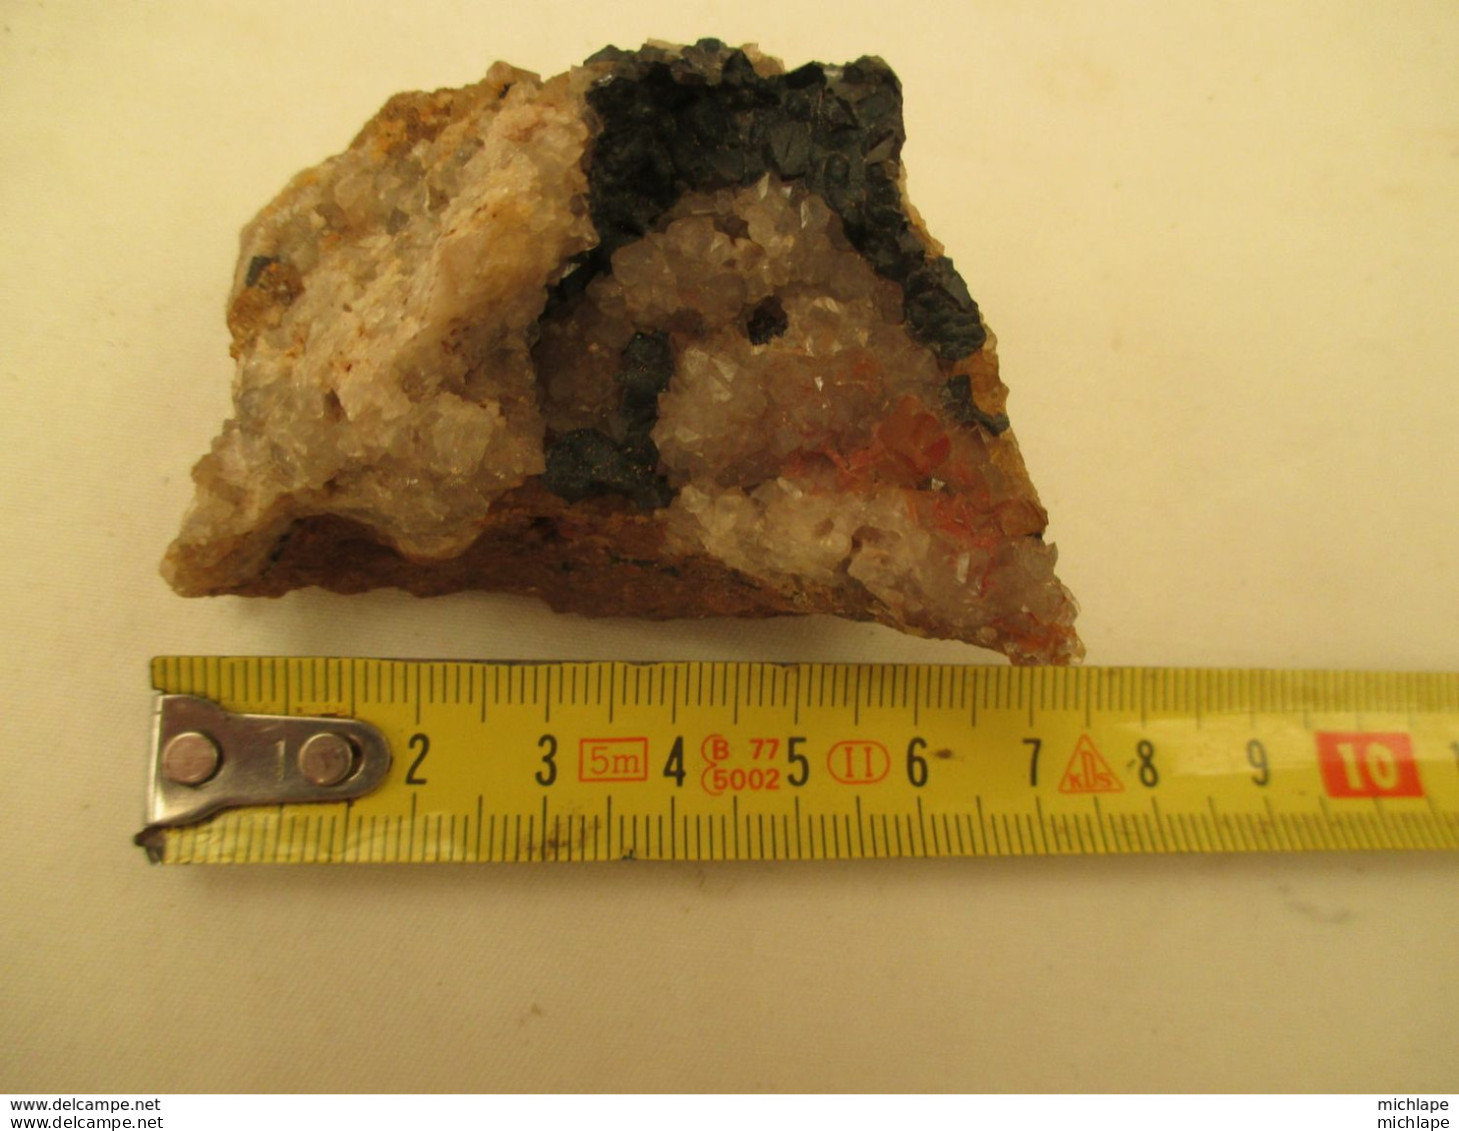 tres belle  pierre  noire  et brune avec  cristaux  110 grammes -  je  n'ai  aucunes  connaissances  dans ce domaine  -